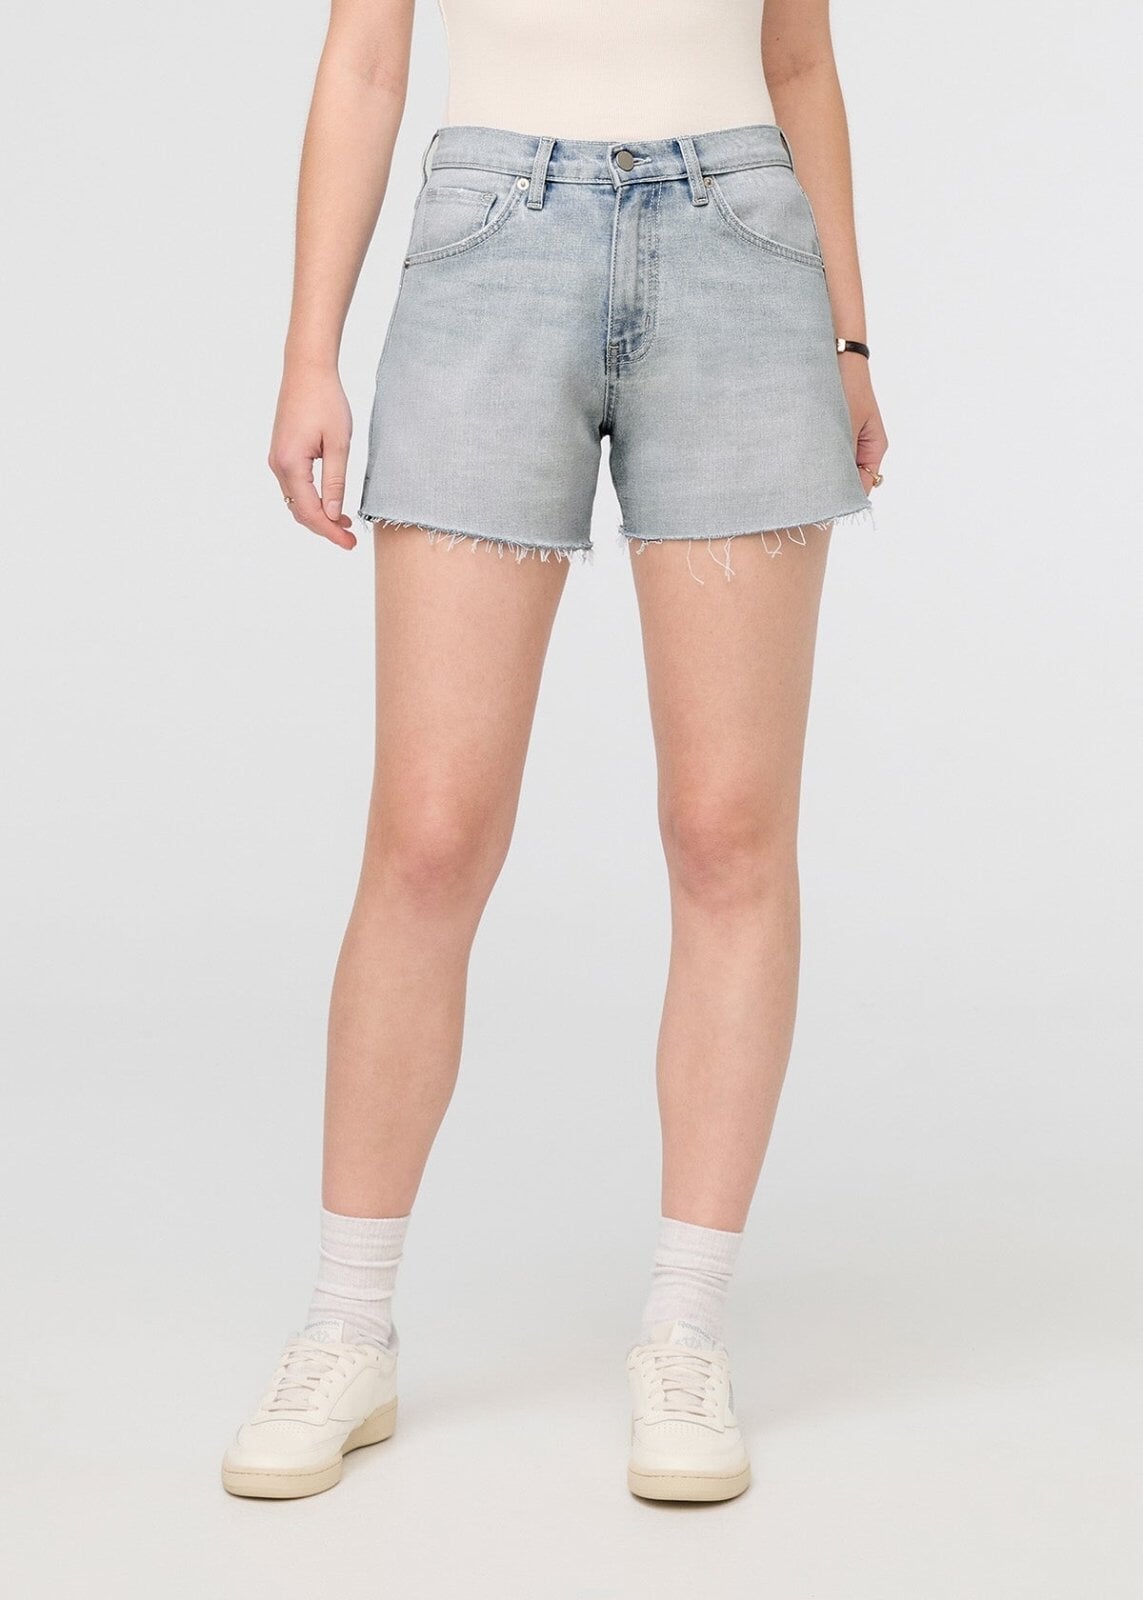 Women's Sexy HighWaist Denim Shorts*2138*